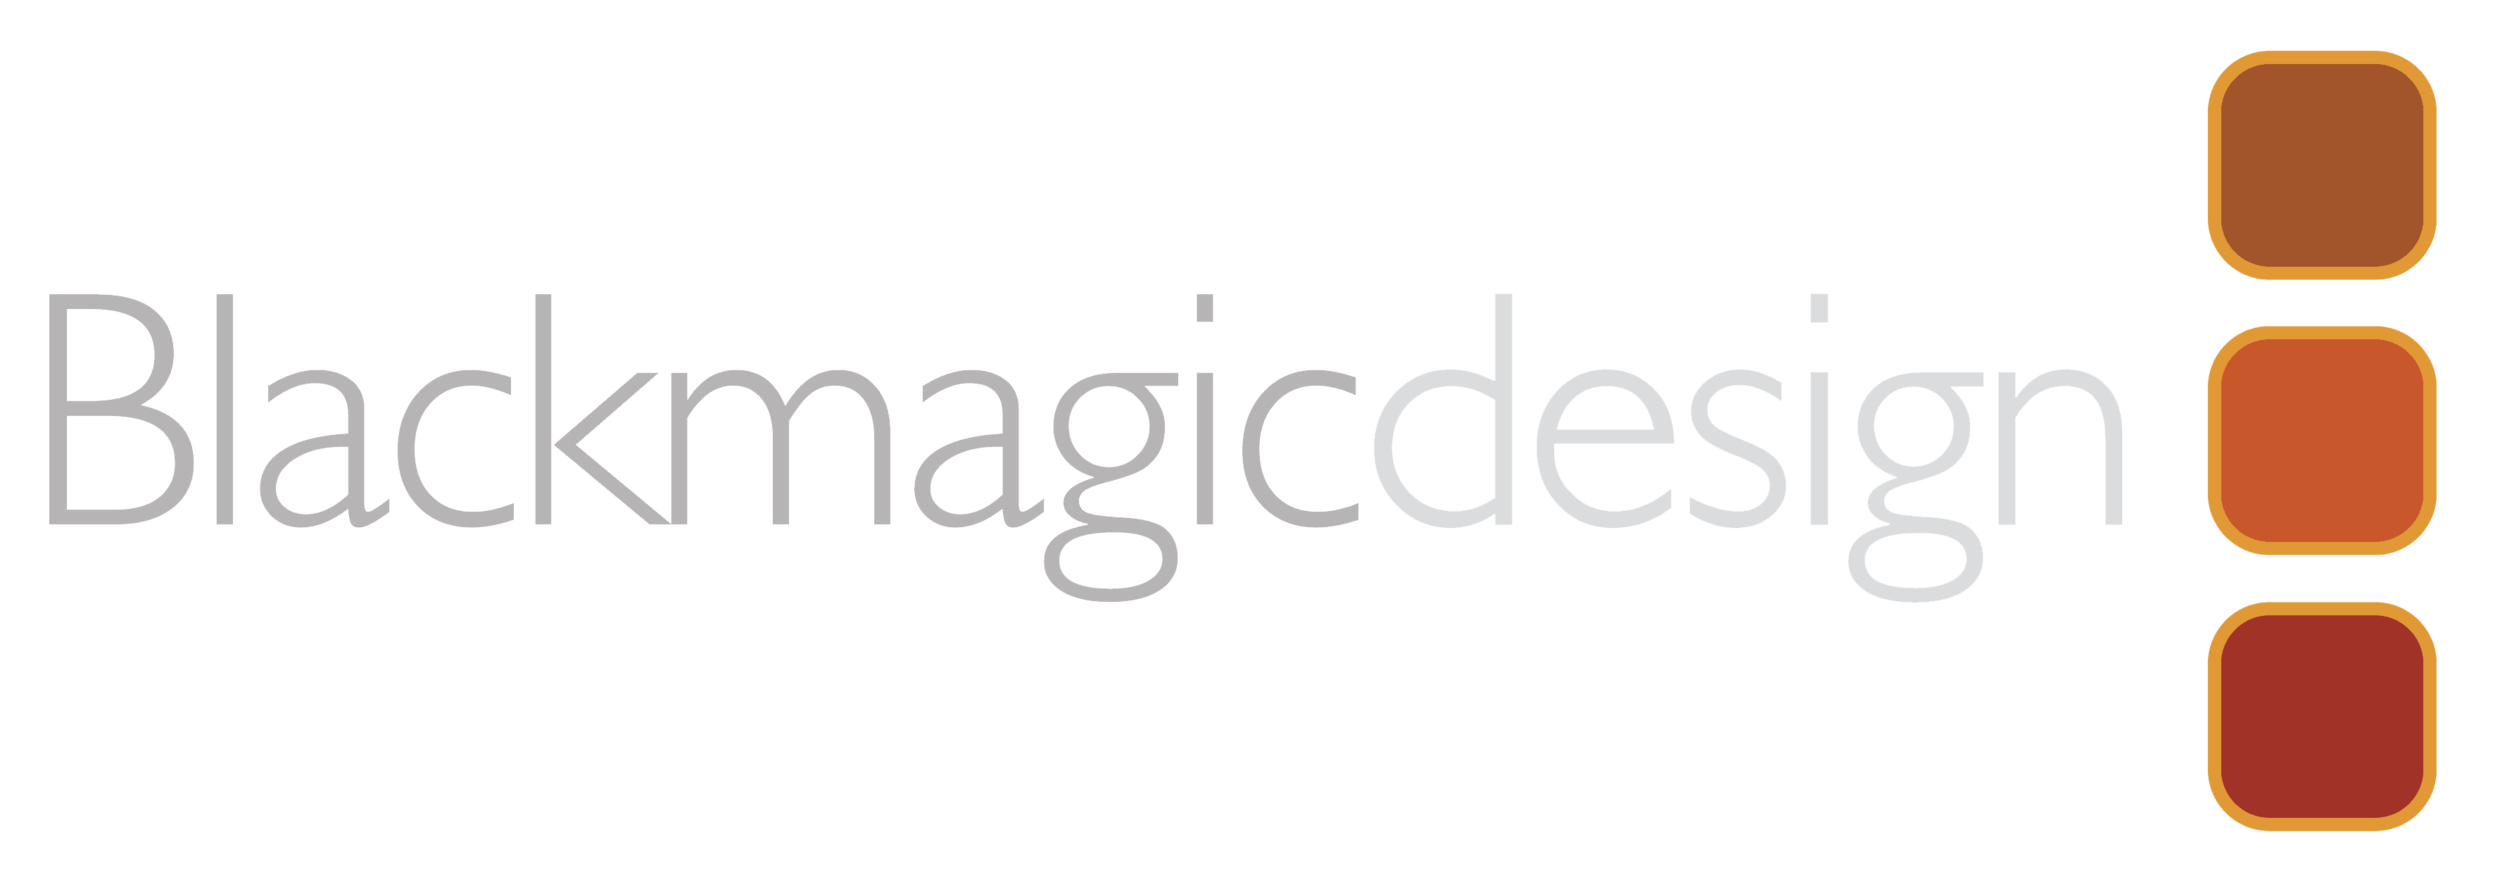 logo-blackmagicdesign.png